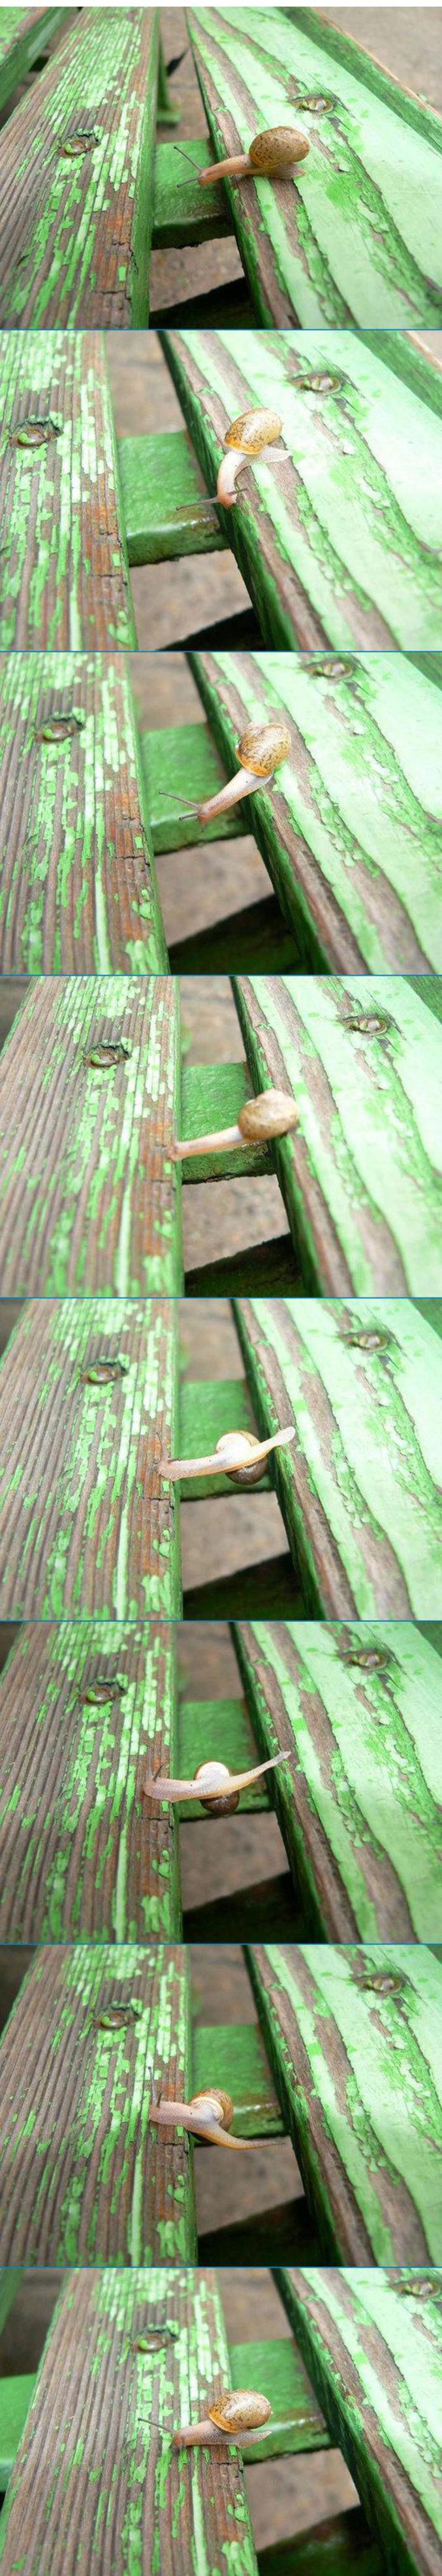 Un escargot qui se déplace sur un banc ...